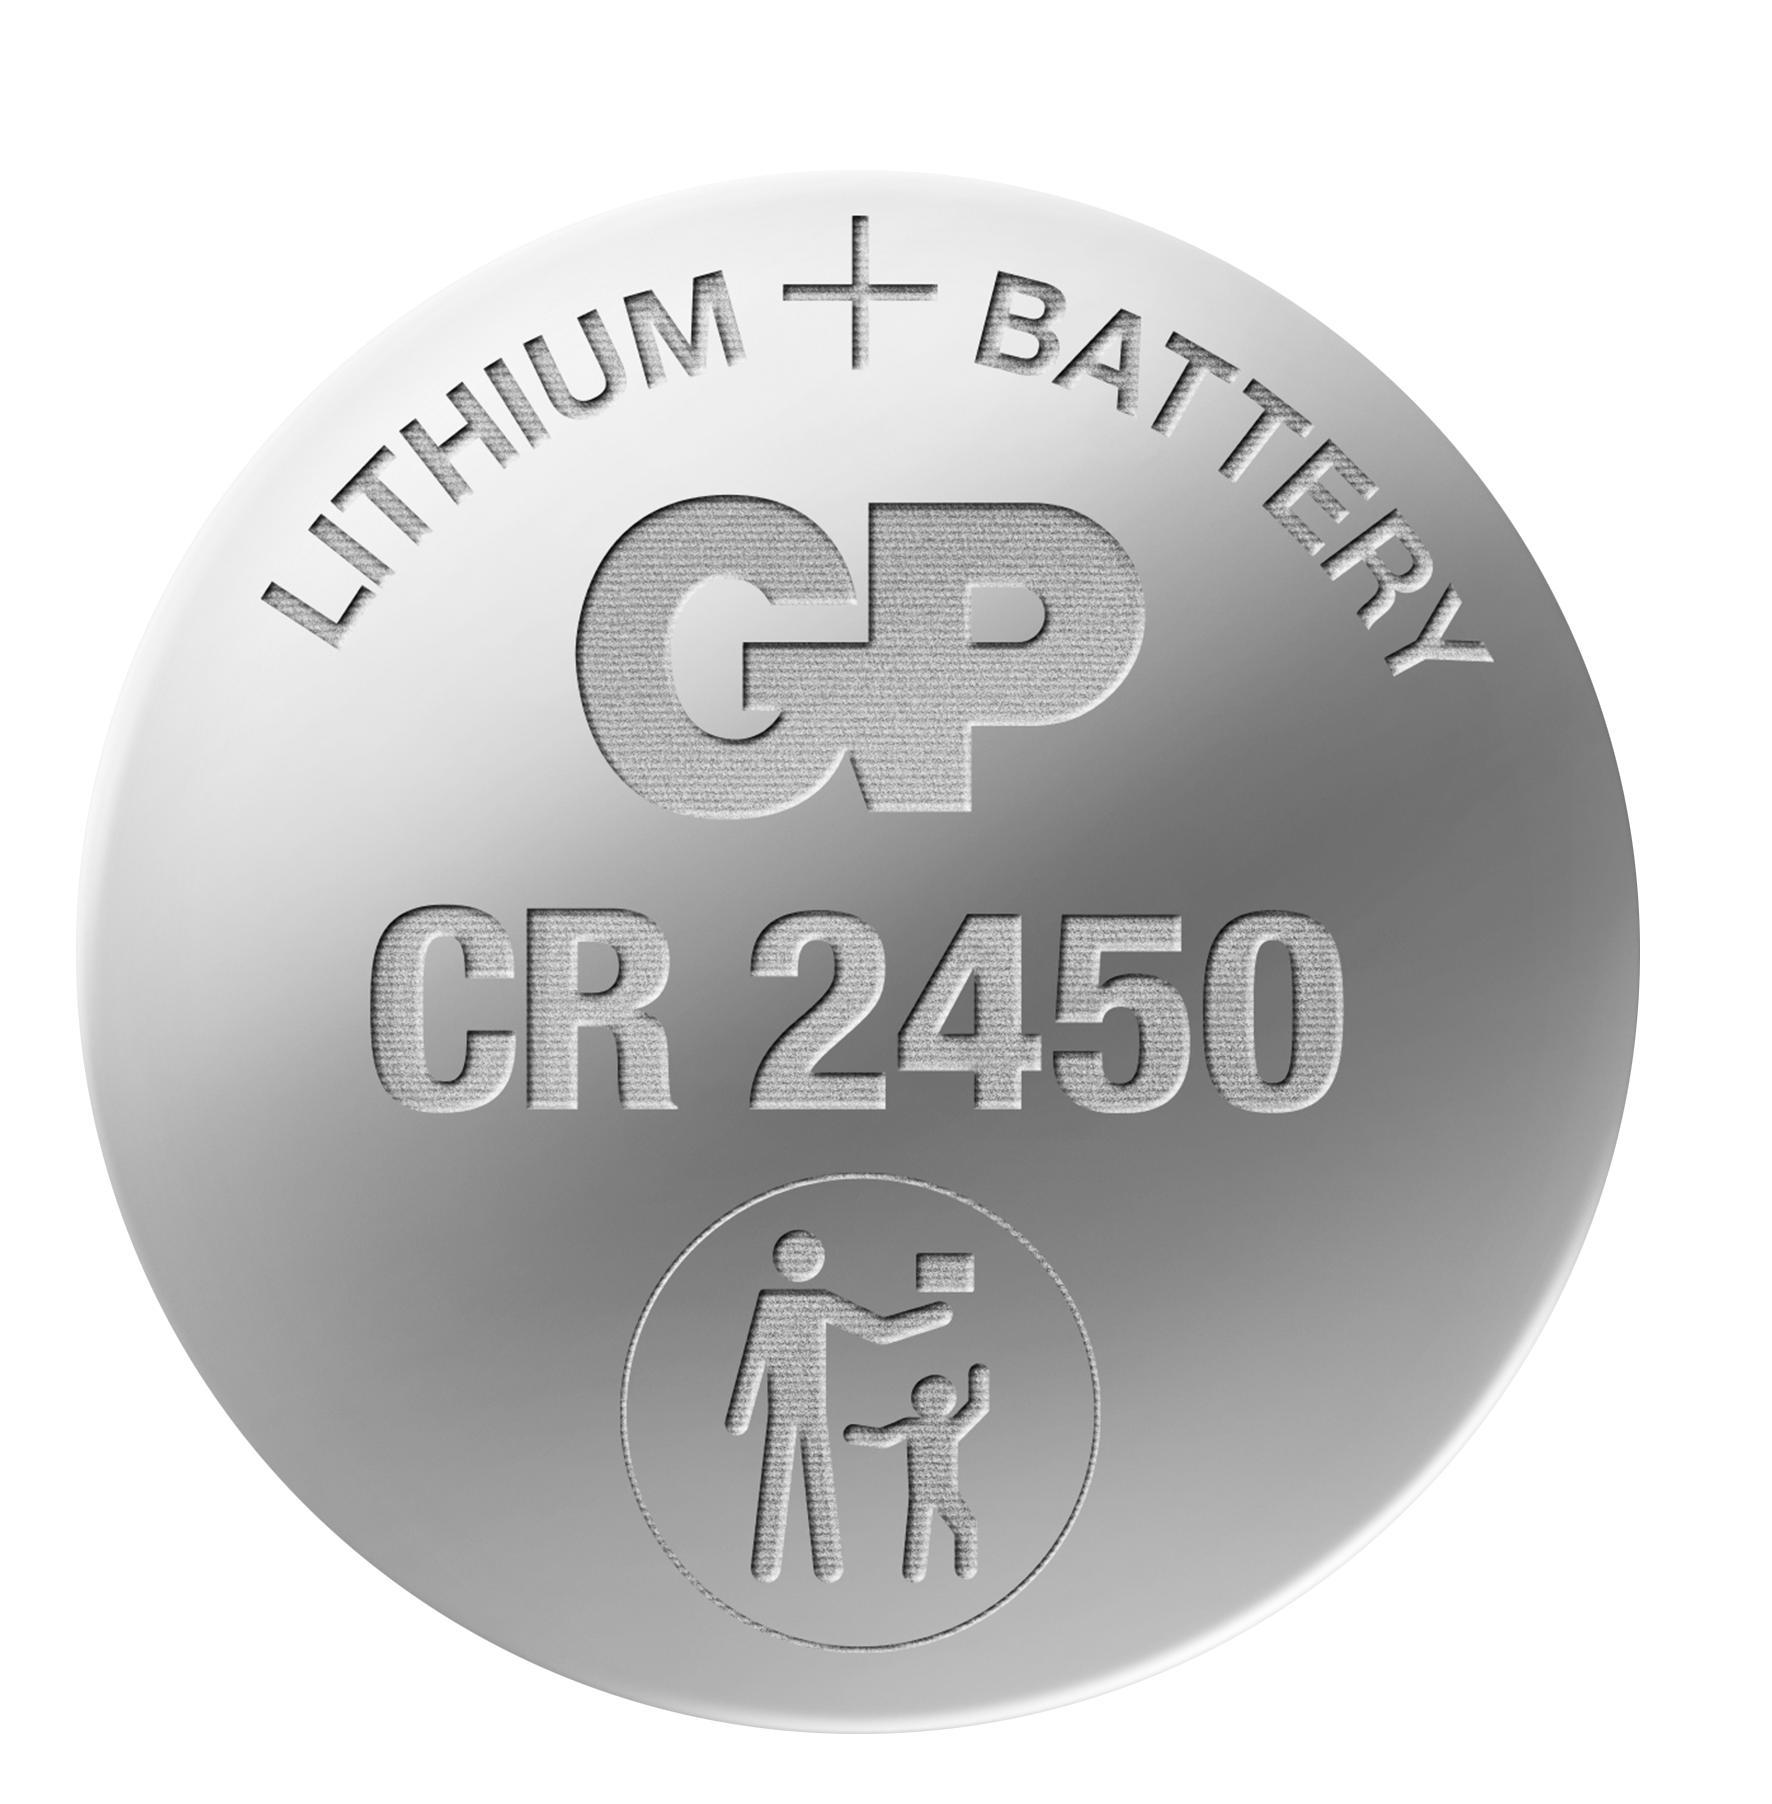 Lithium nappiparisto CR2450